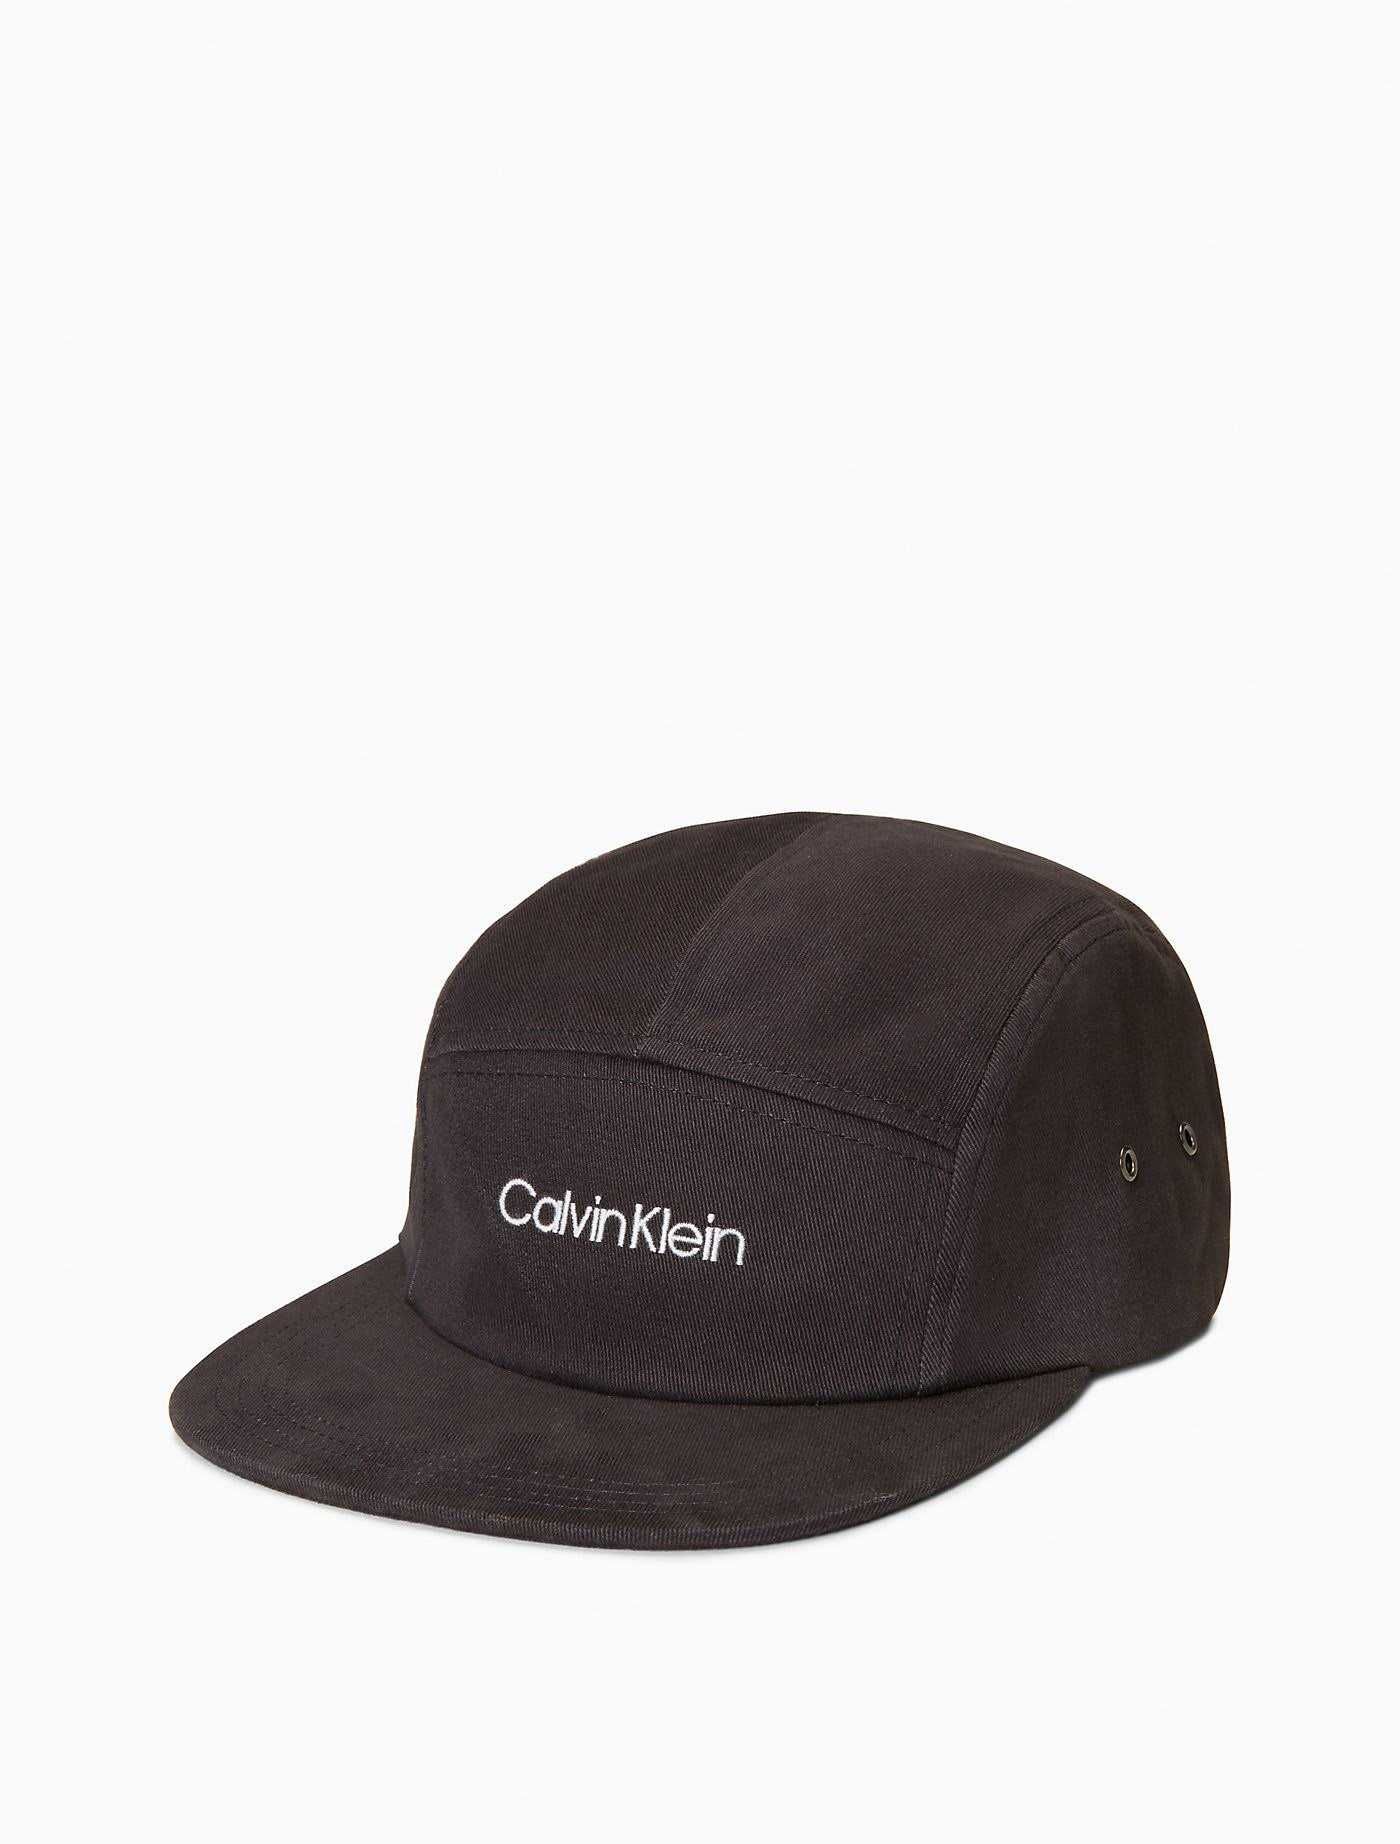 Новая кепка calvin klein бейсболка ( ck 5-panel black cap ) с америки